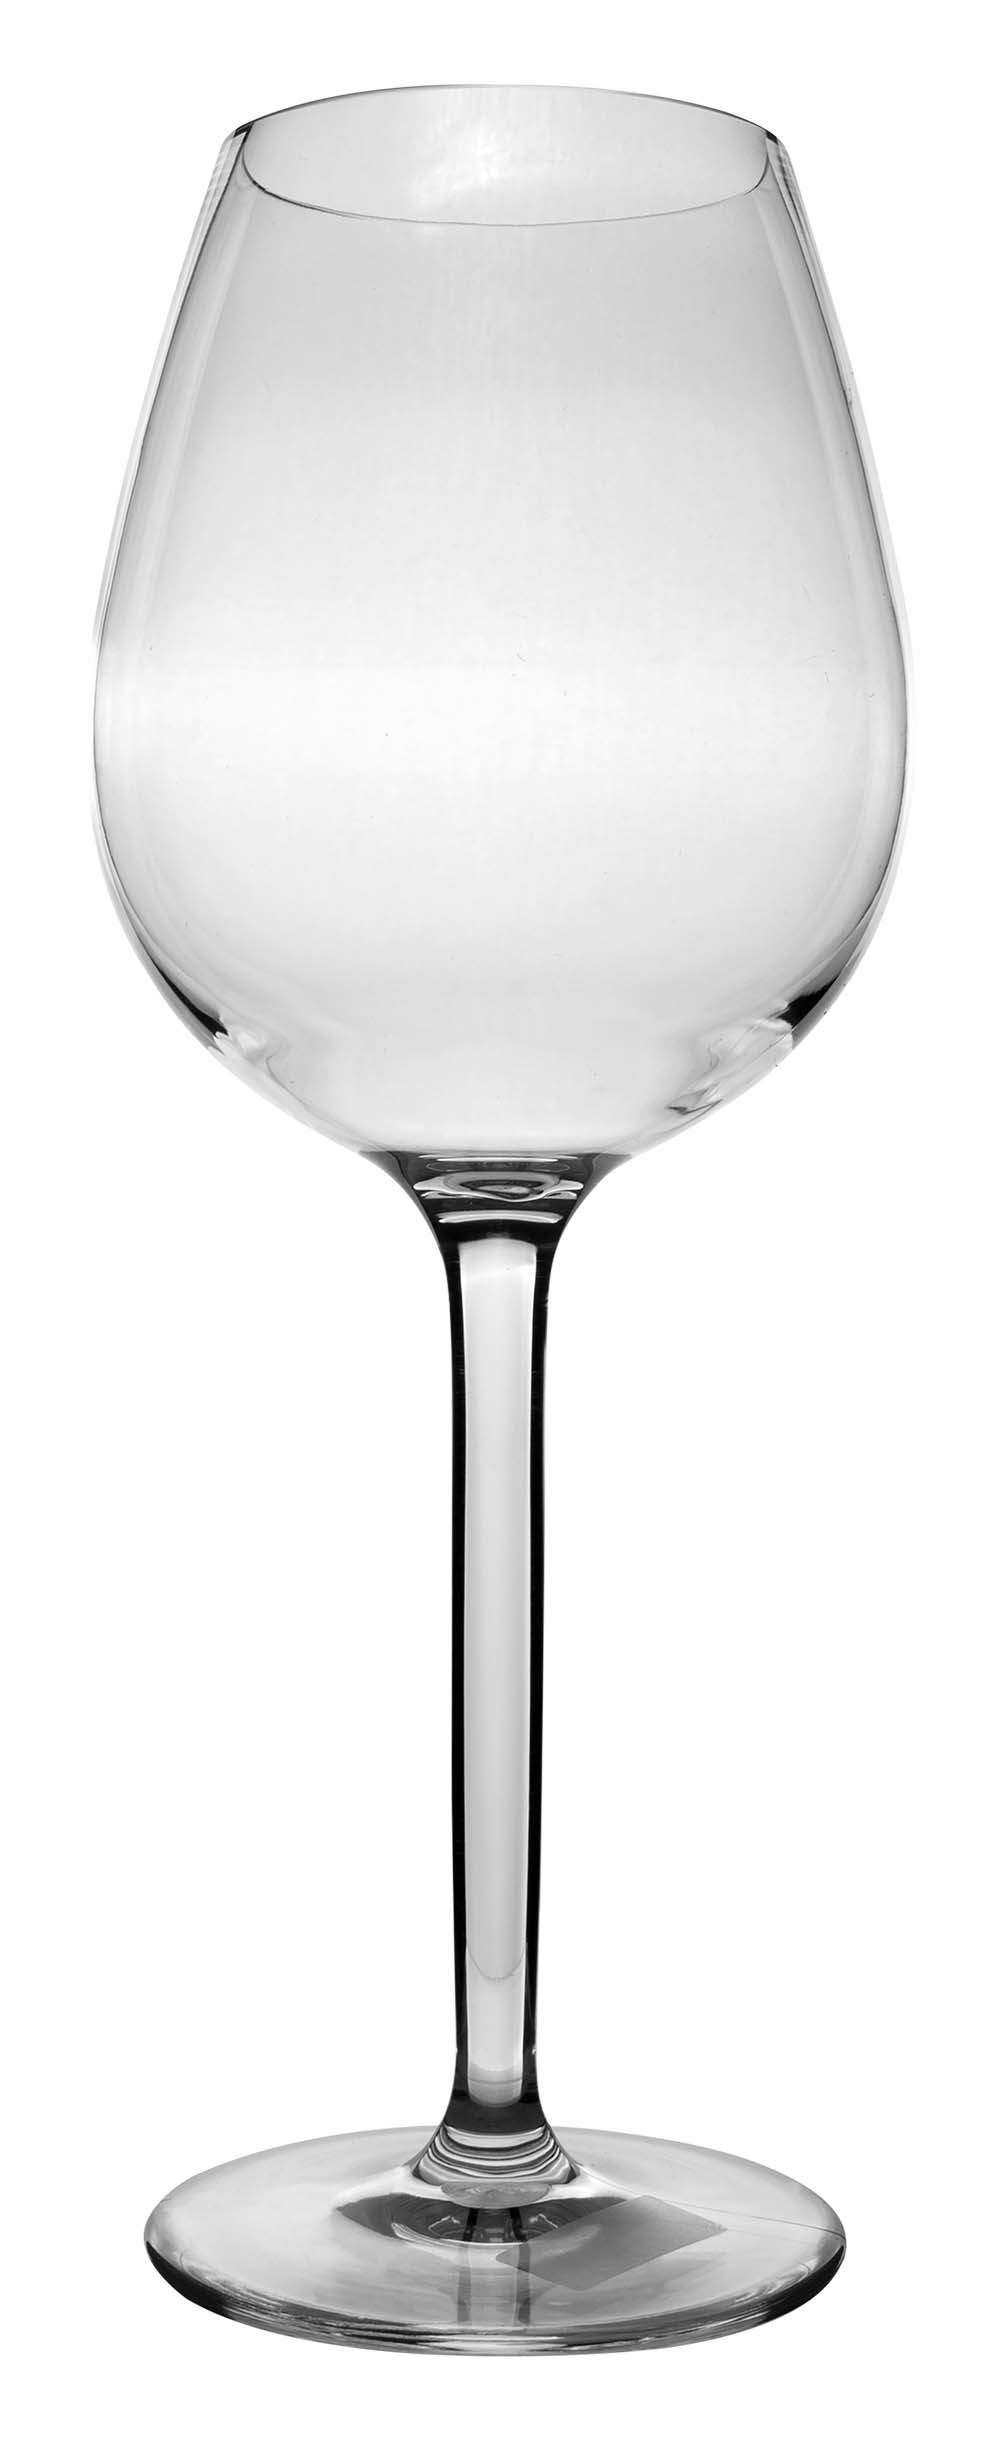 6101465 Een extra stevig en elegant rode wijnglas. Gemaakt van 100% Tritan. Hierdoor is het glas vrijwel onbreekbaar, lichtgewicht en kraswerend. Ook is dit glas vaatwasmachinebestendig. Het glas is BPA vrij.